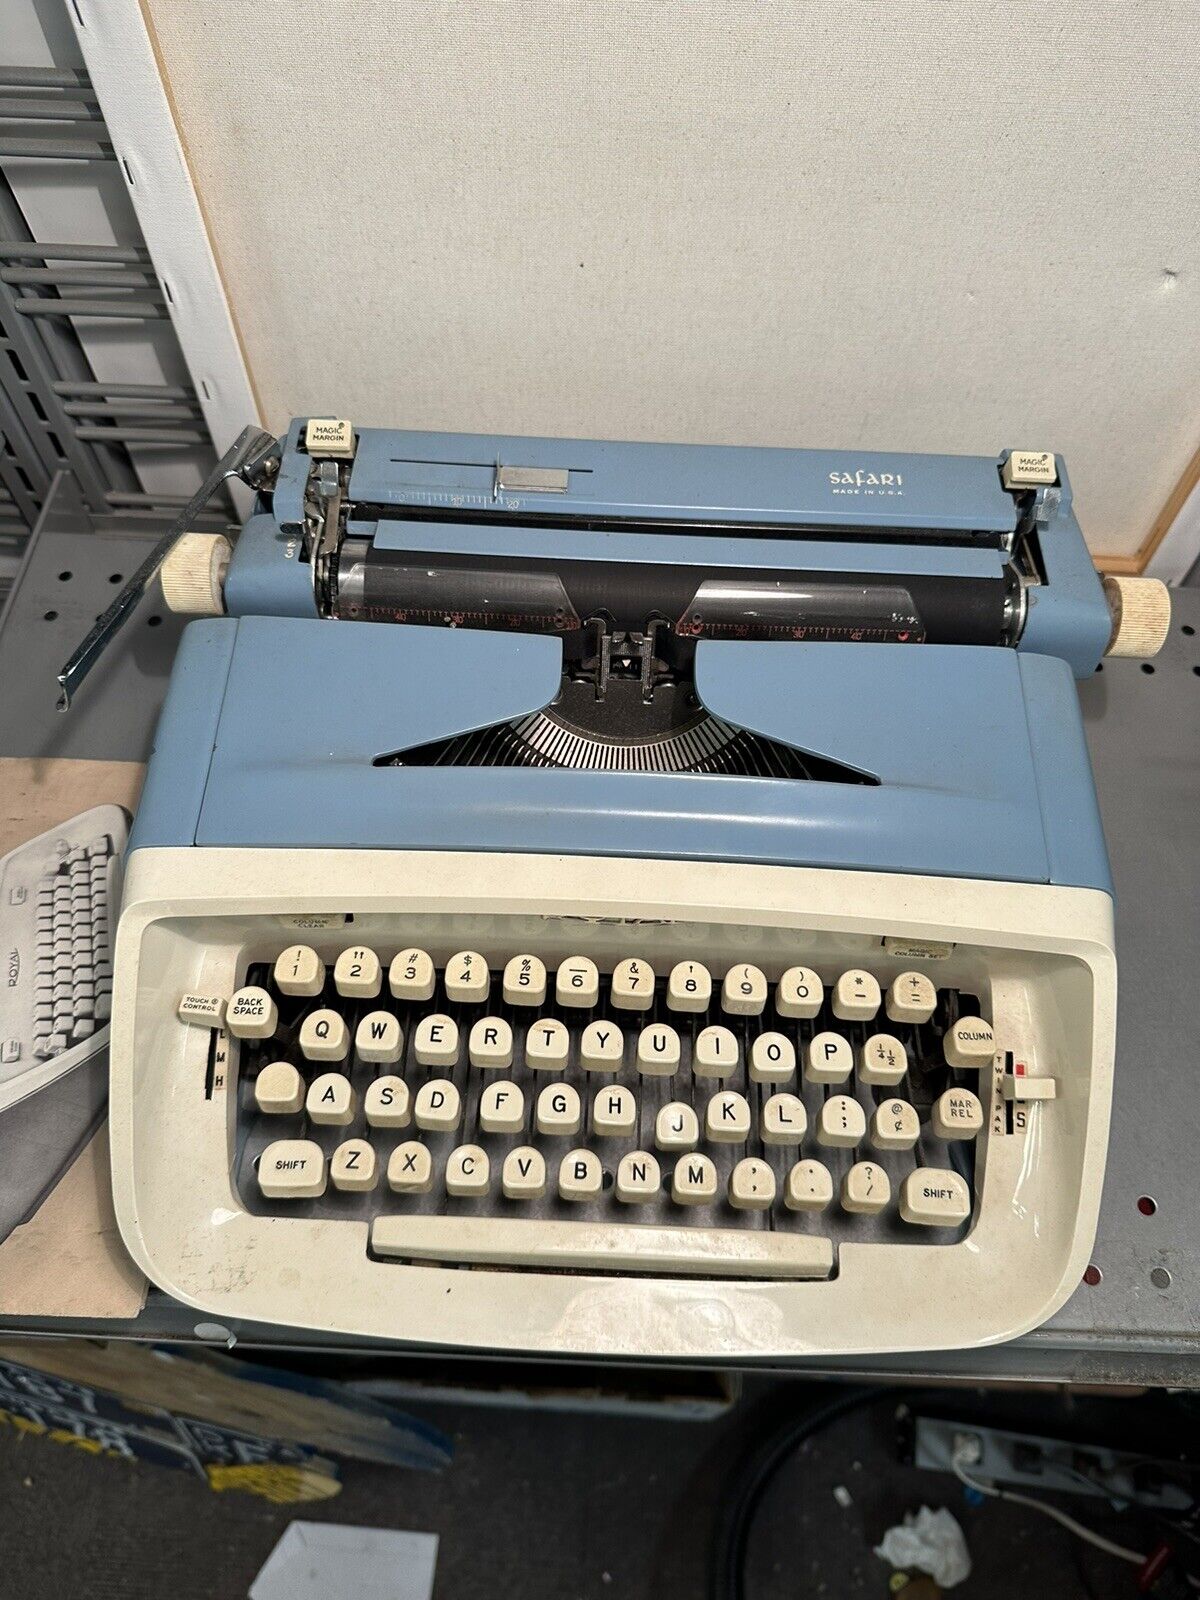 Royal Safari Manual Typewriter No Case with Manual